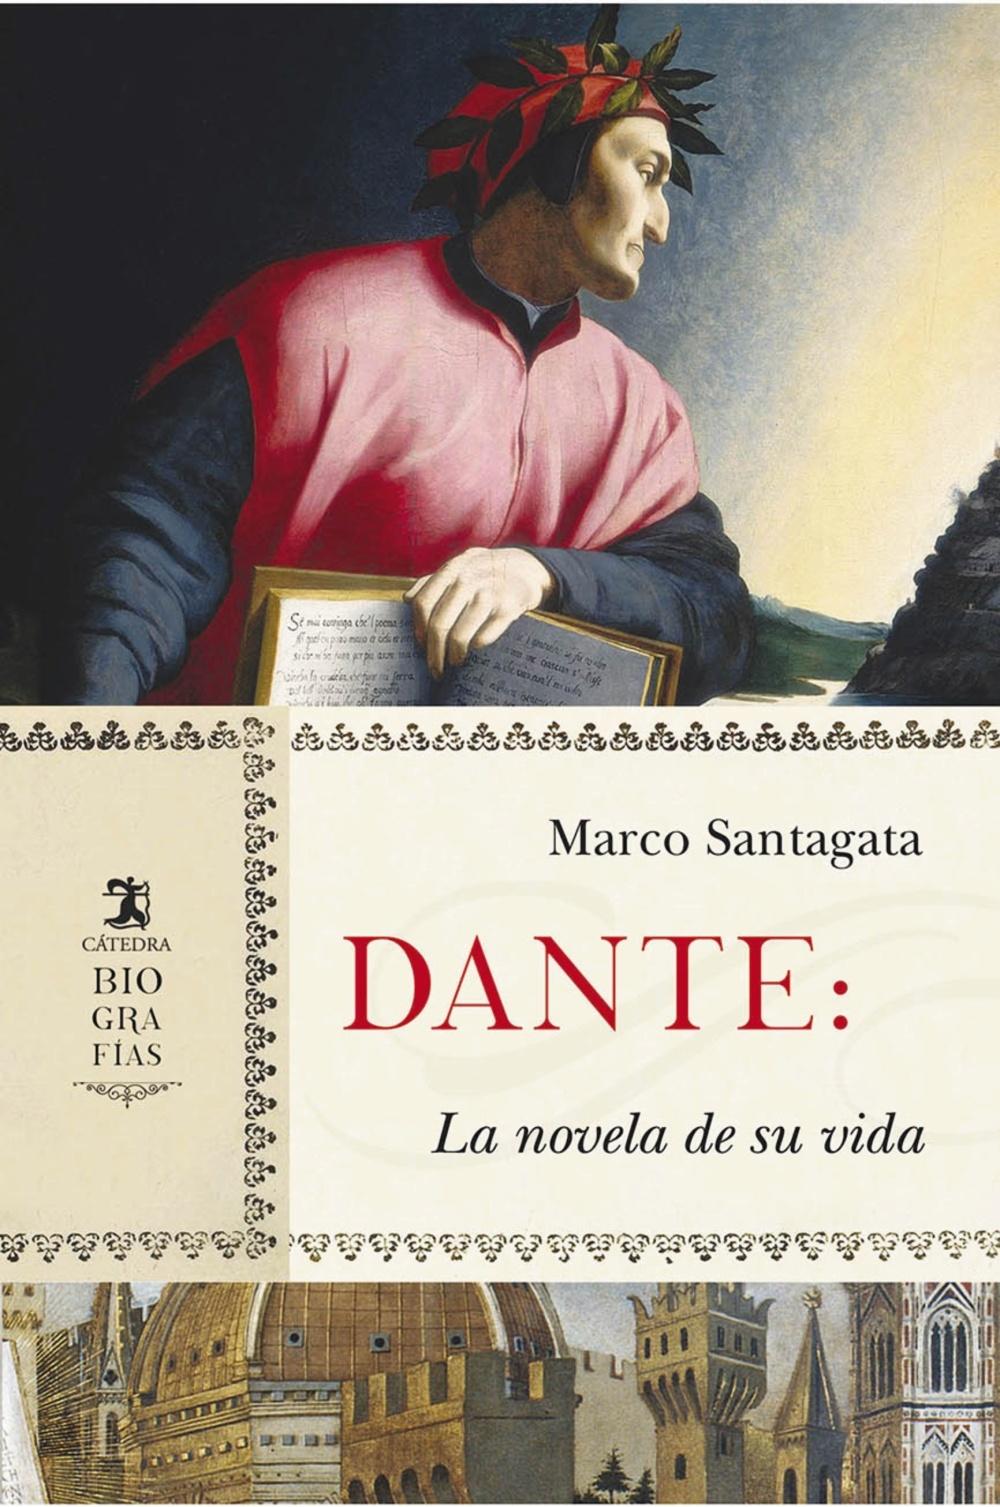 Dante "La Novela de su Vida"